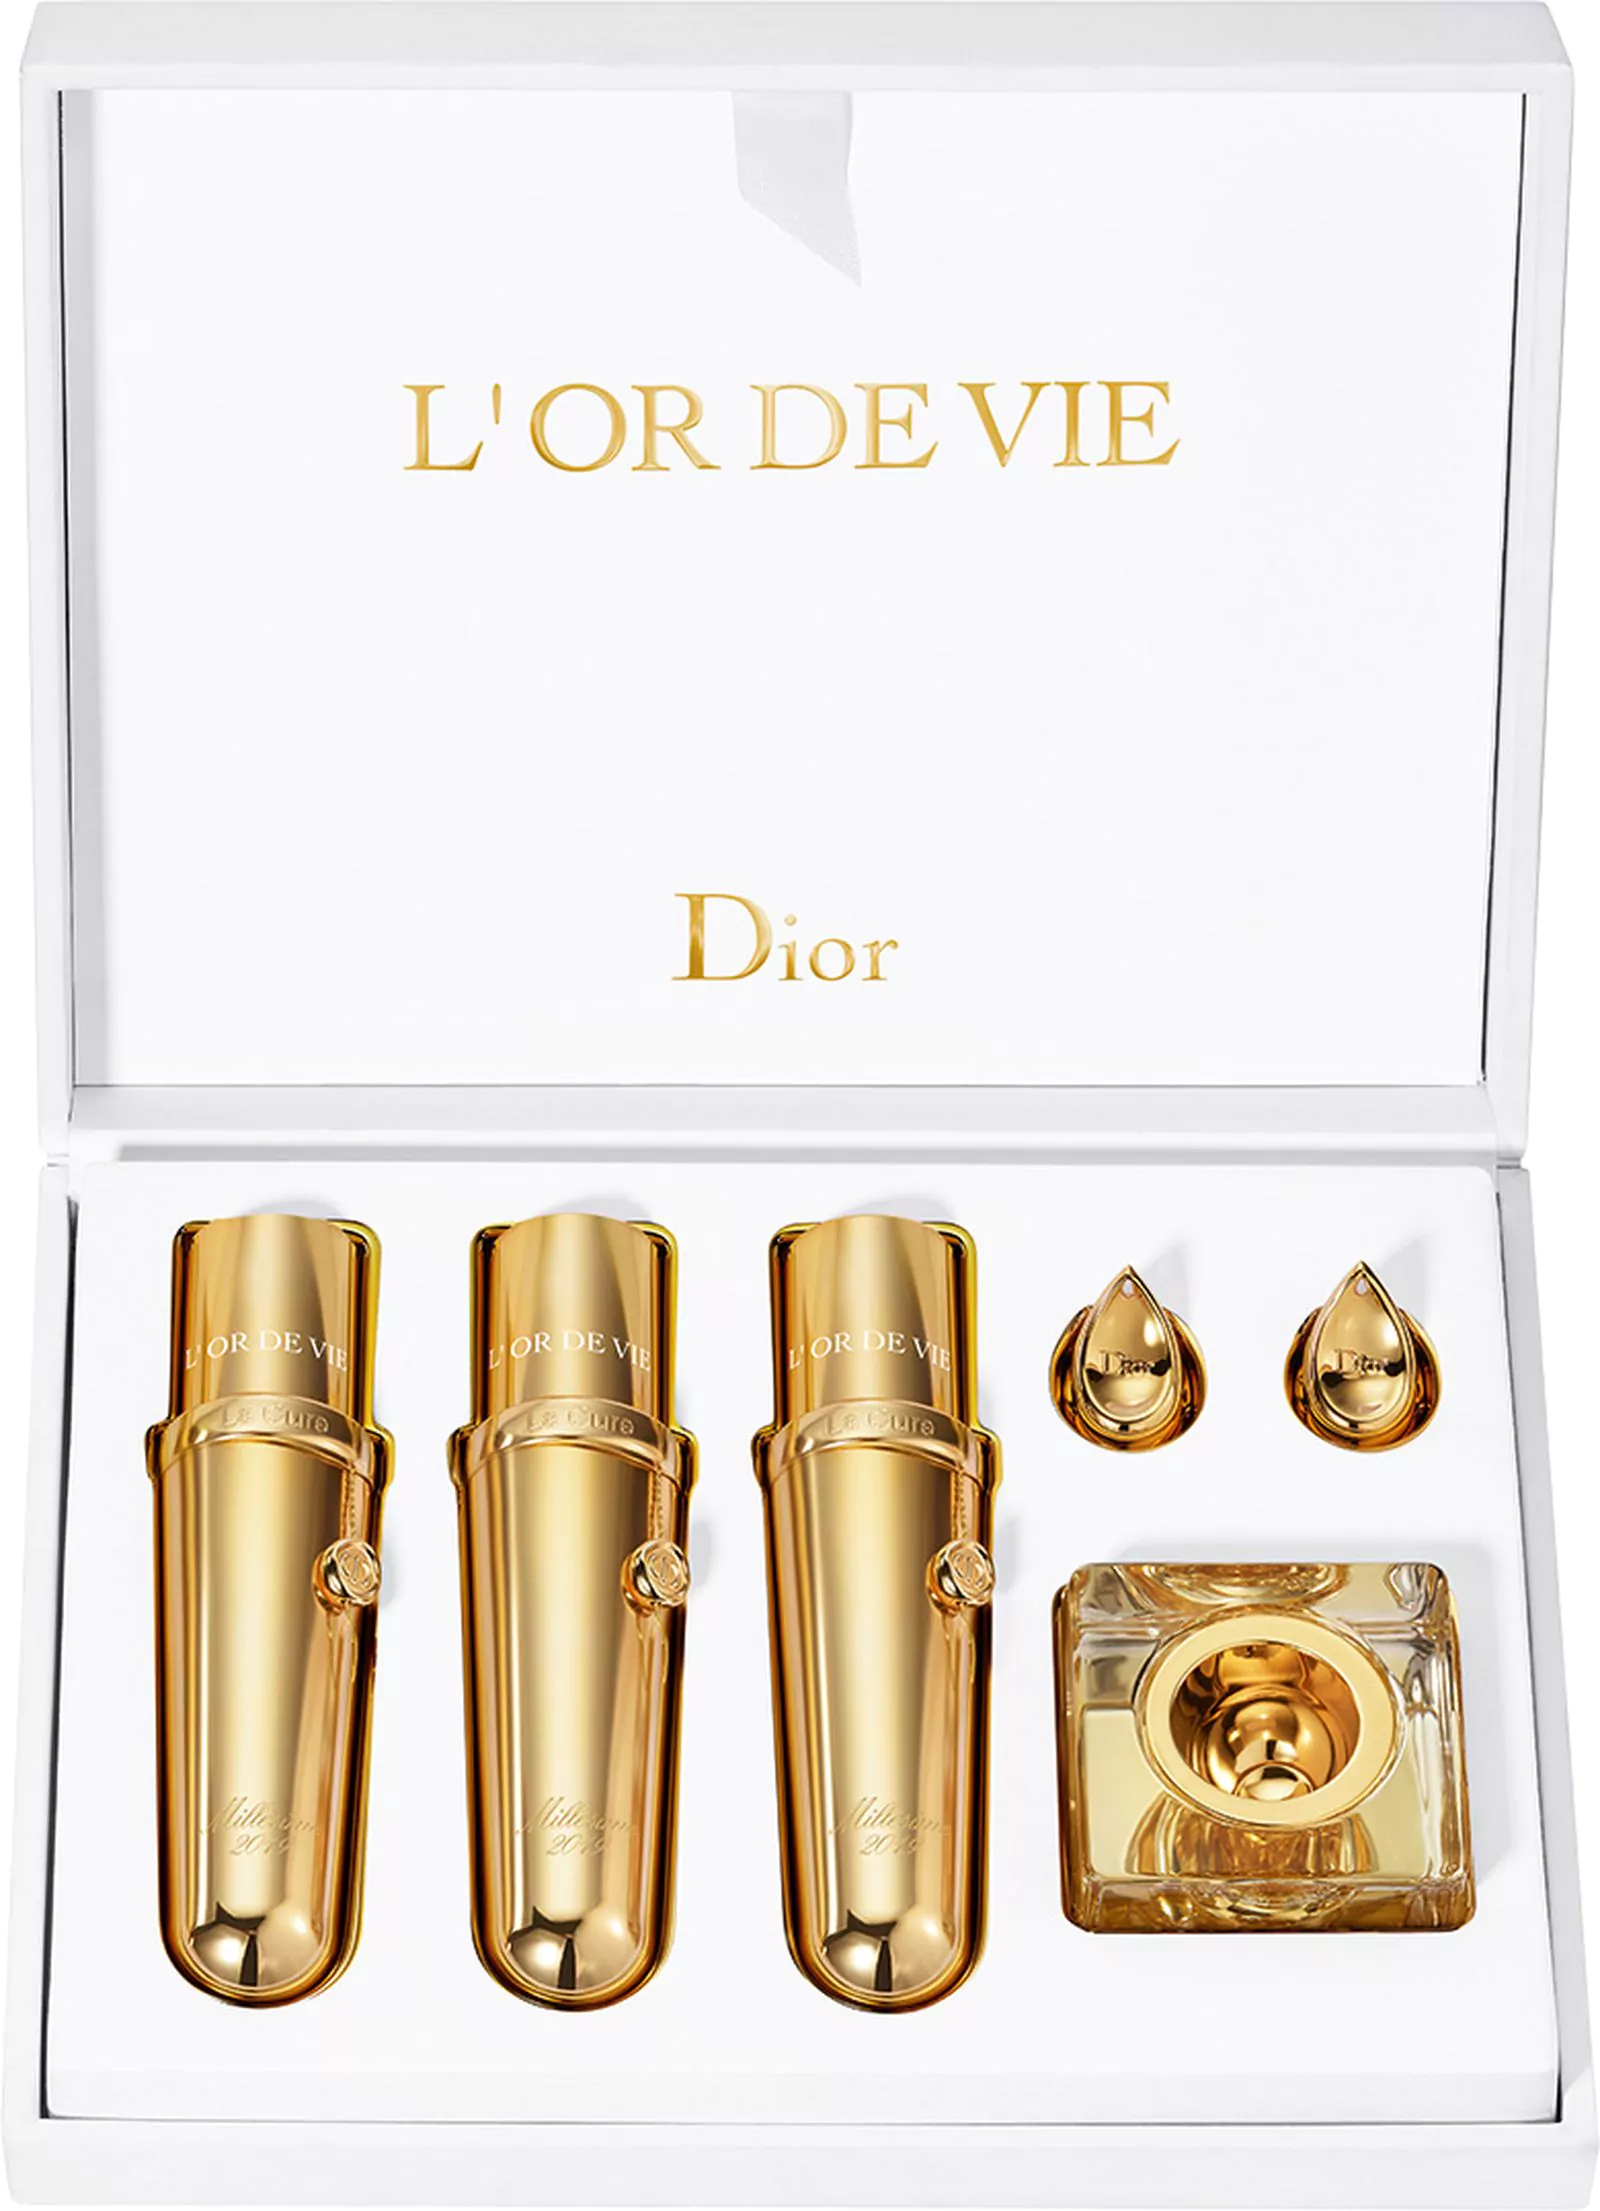 Dior La Cure Vintage 2019 L’Or de Vie